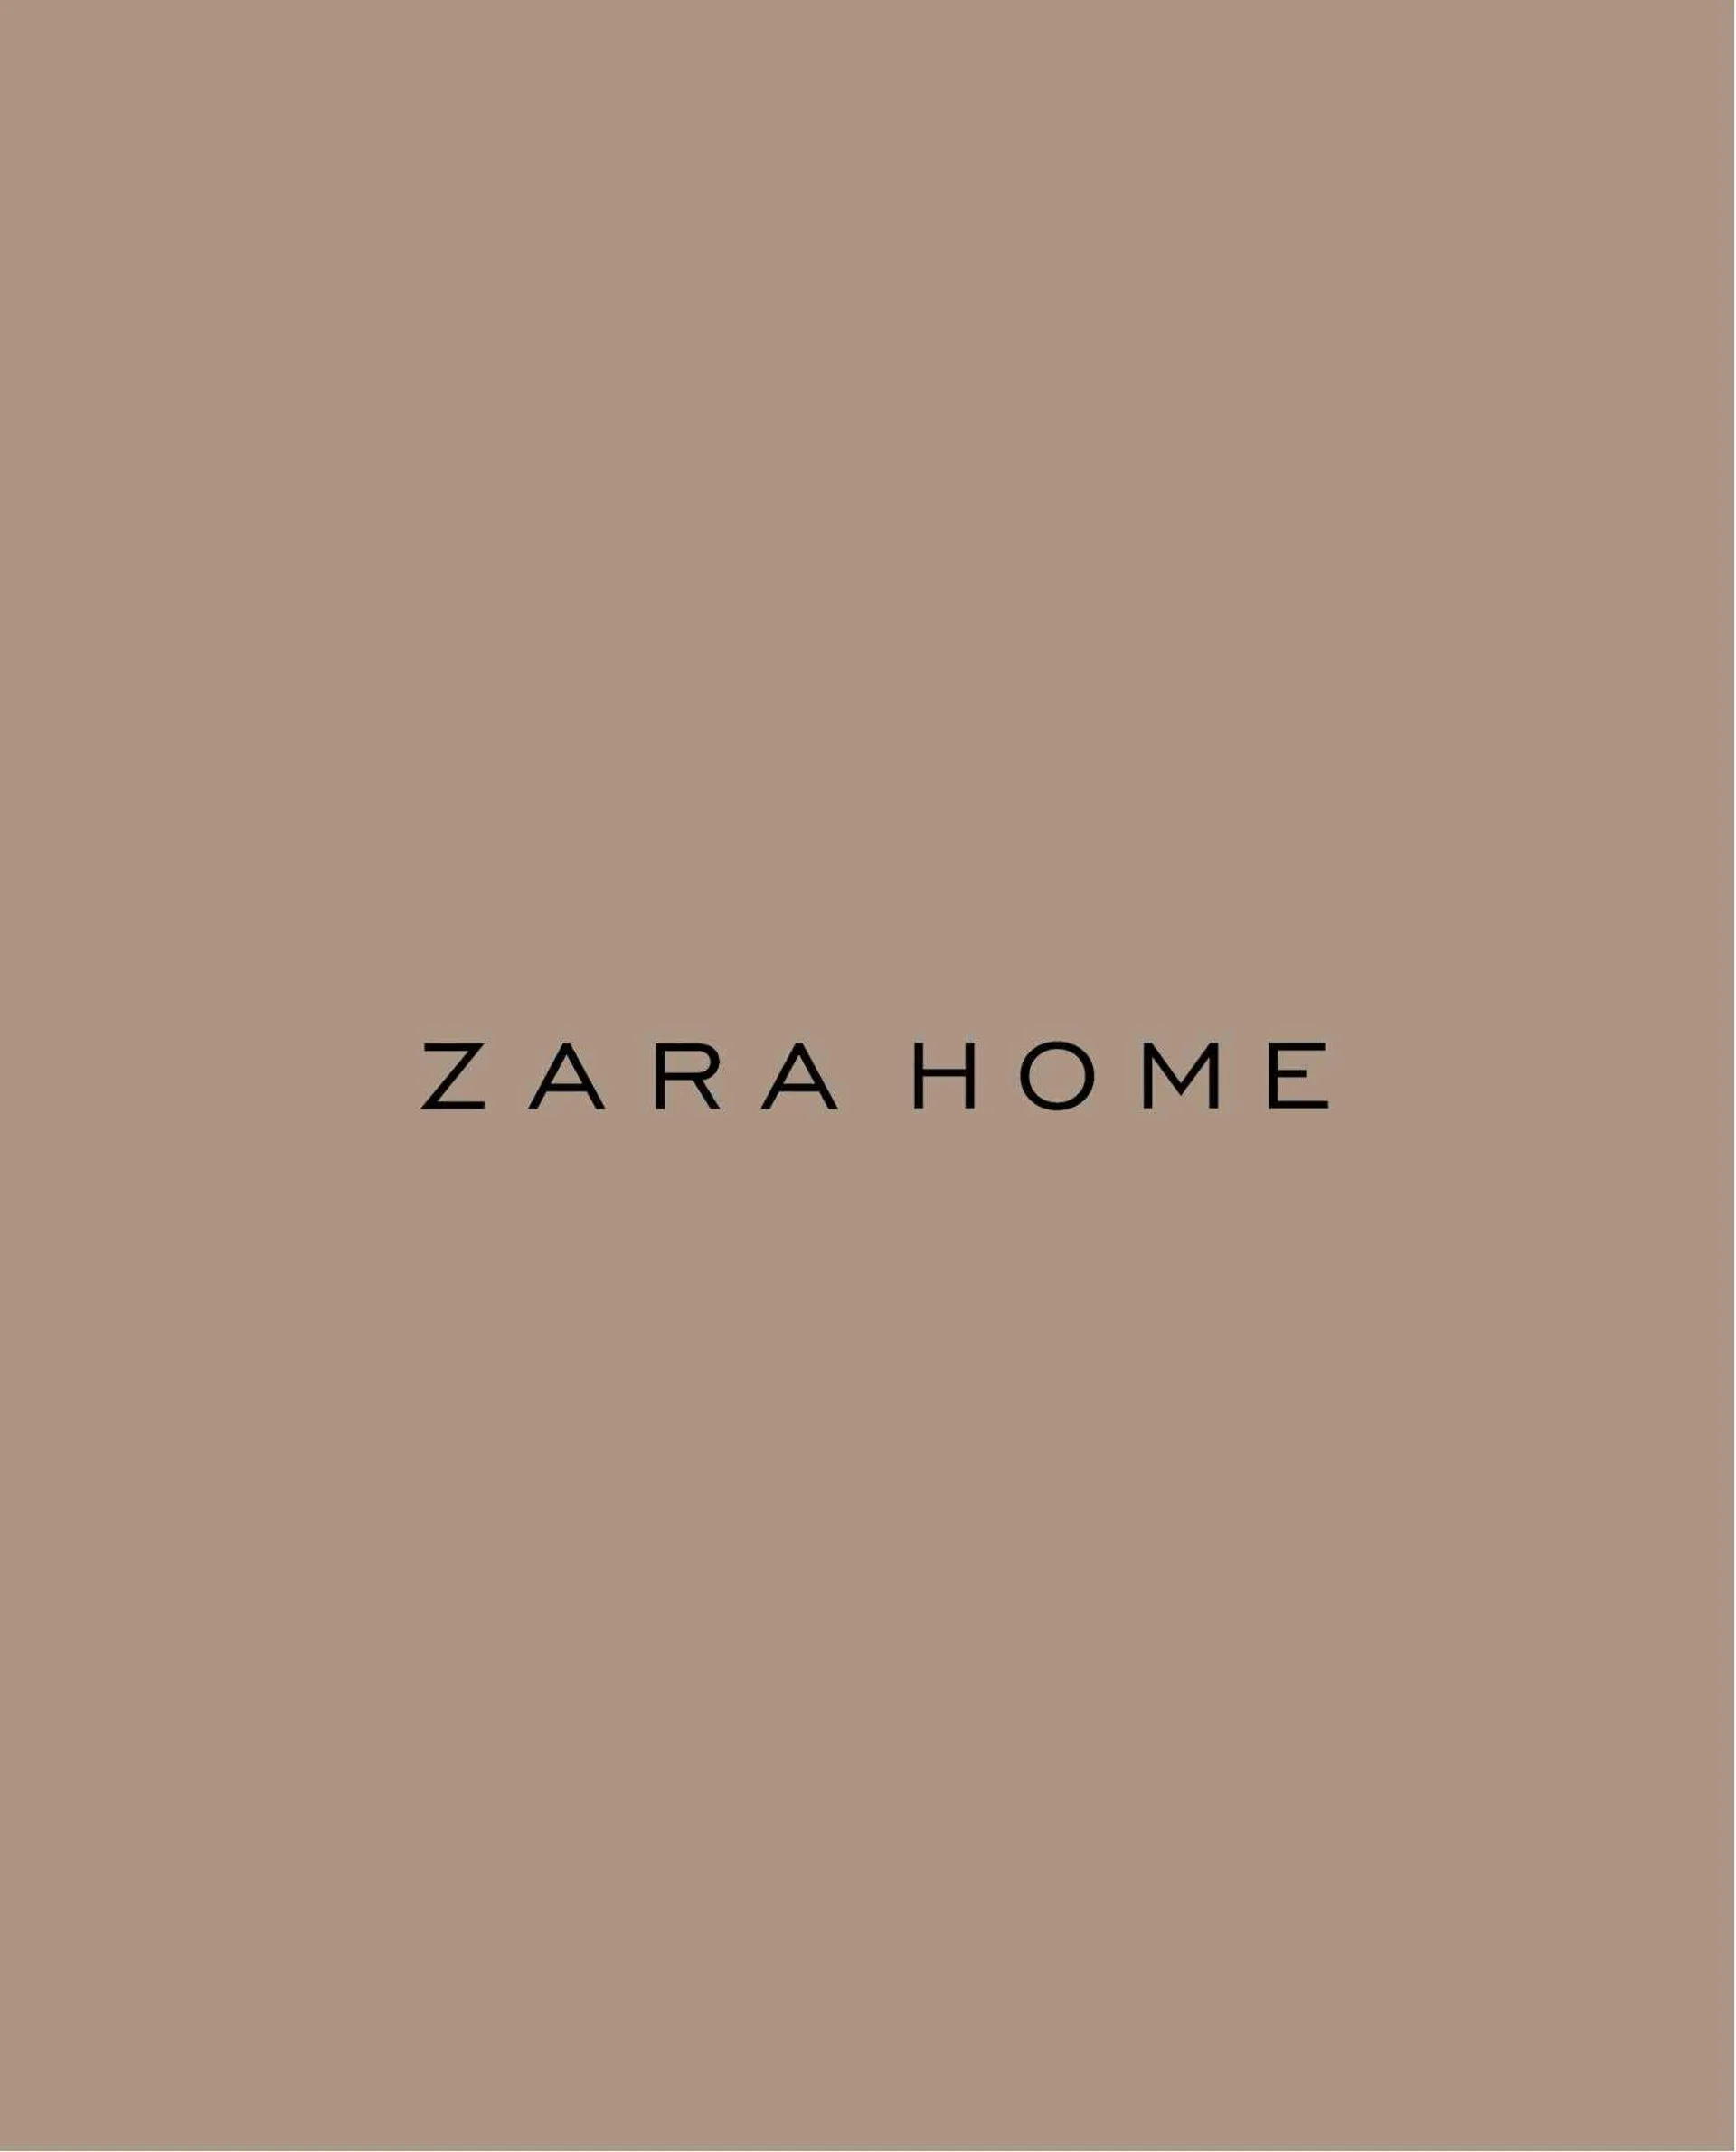 ZARA Home Catalog - 12